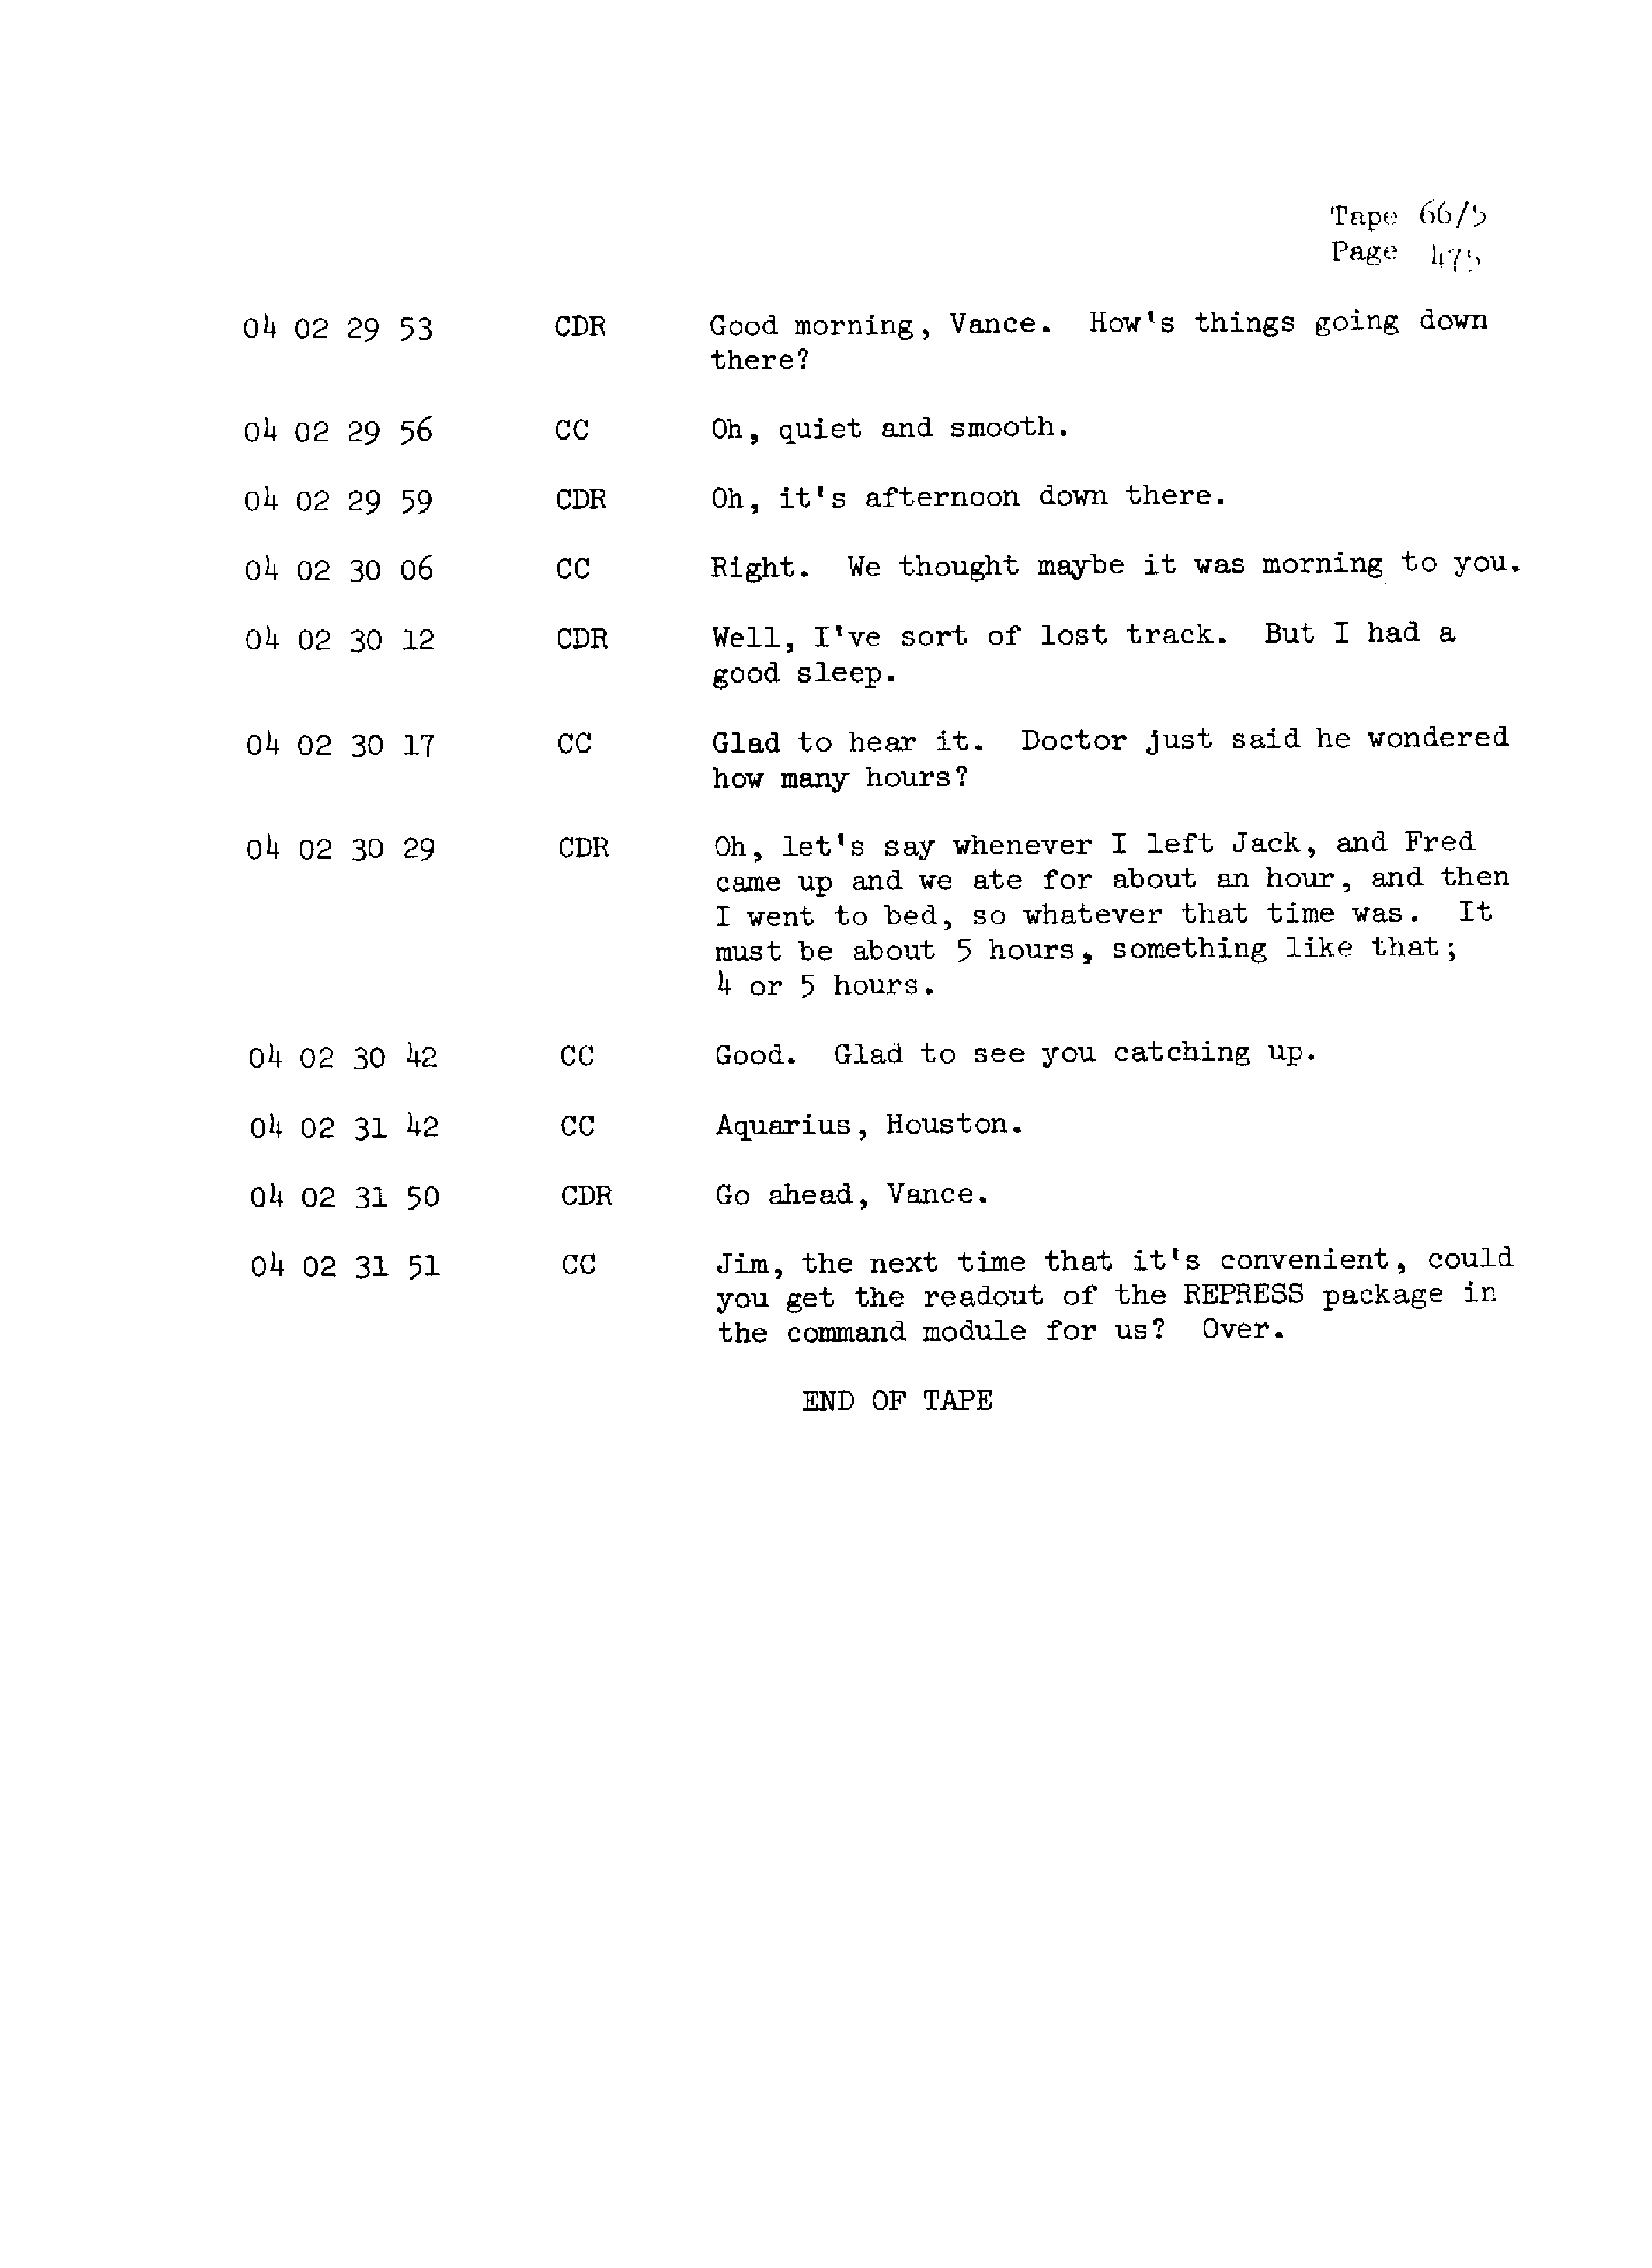 Page 482 of Apollo 13’s original transcript